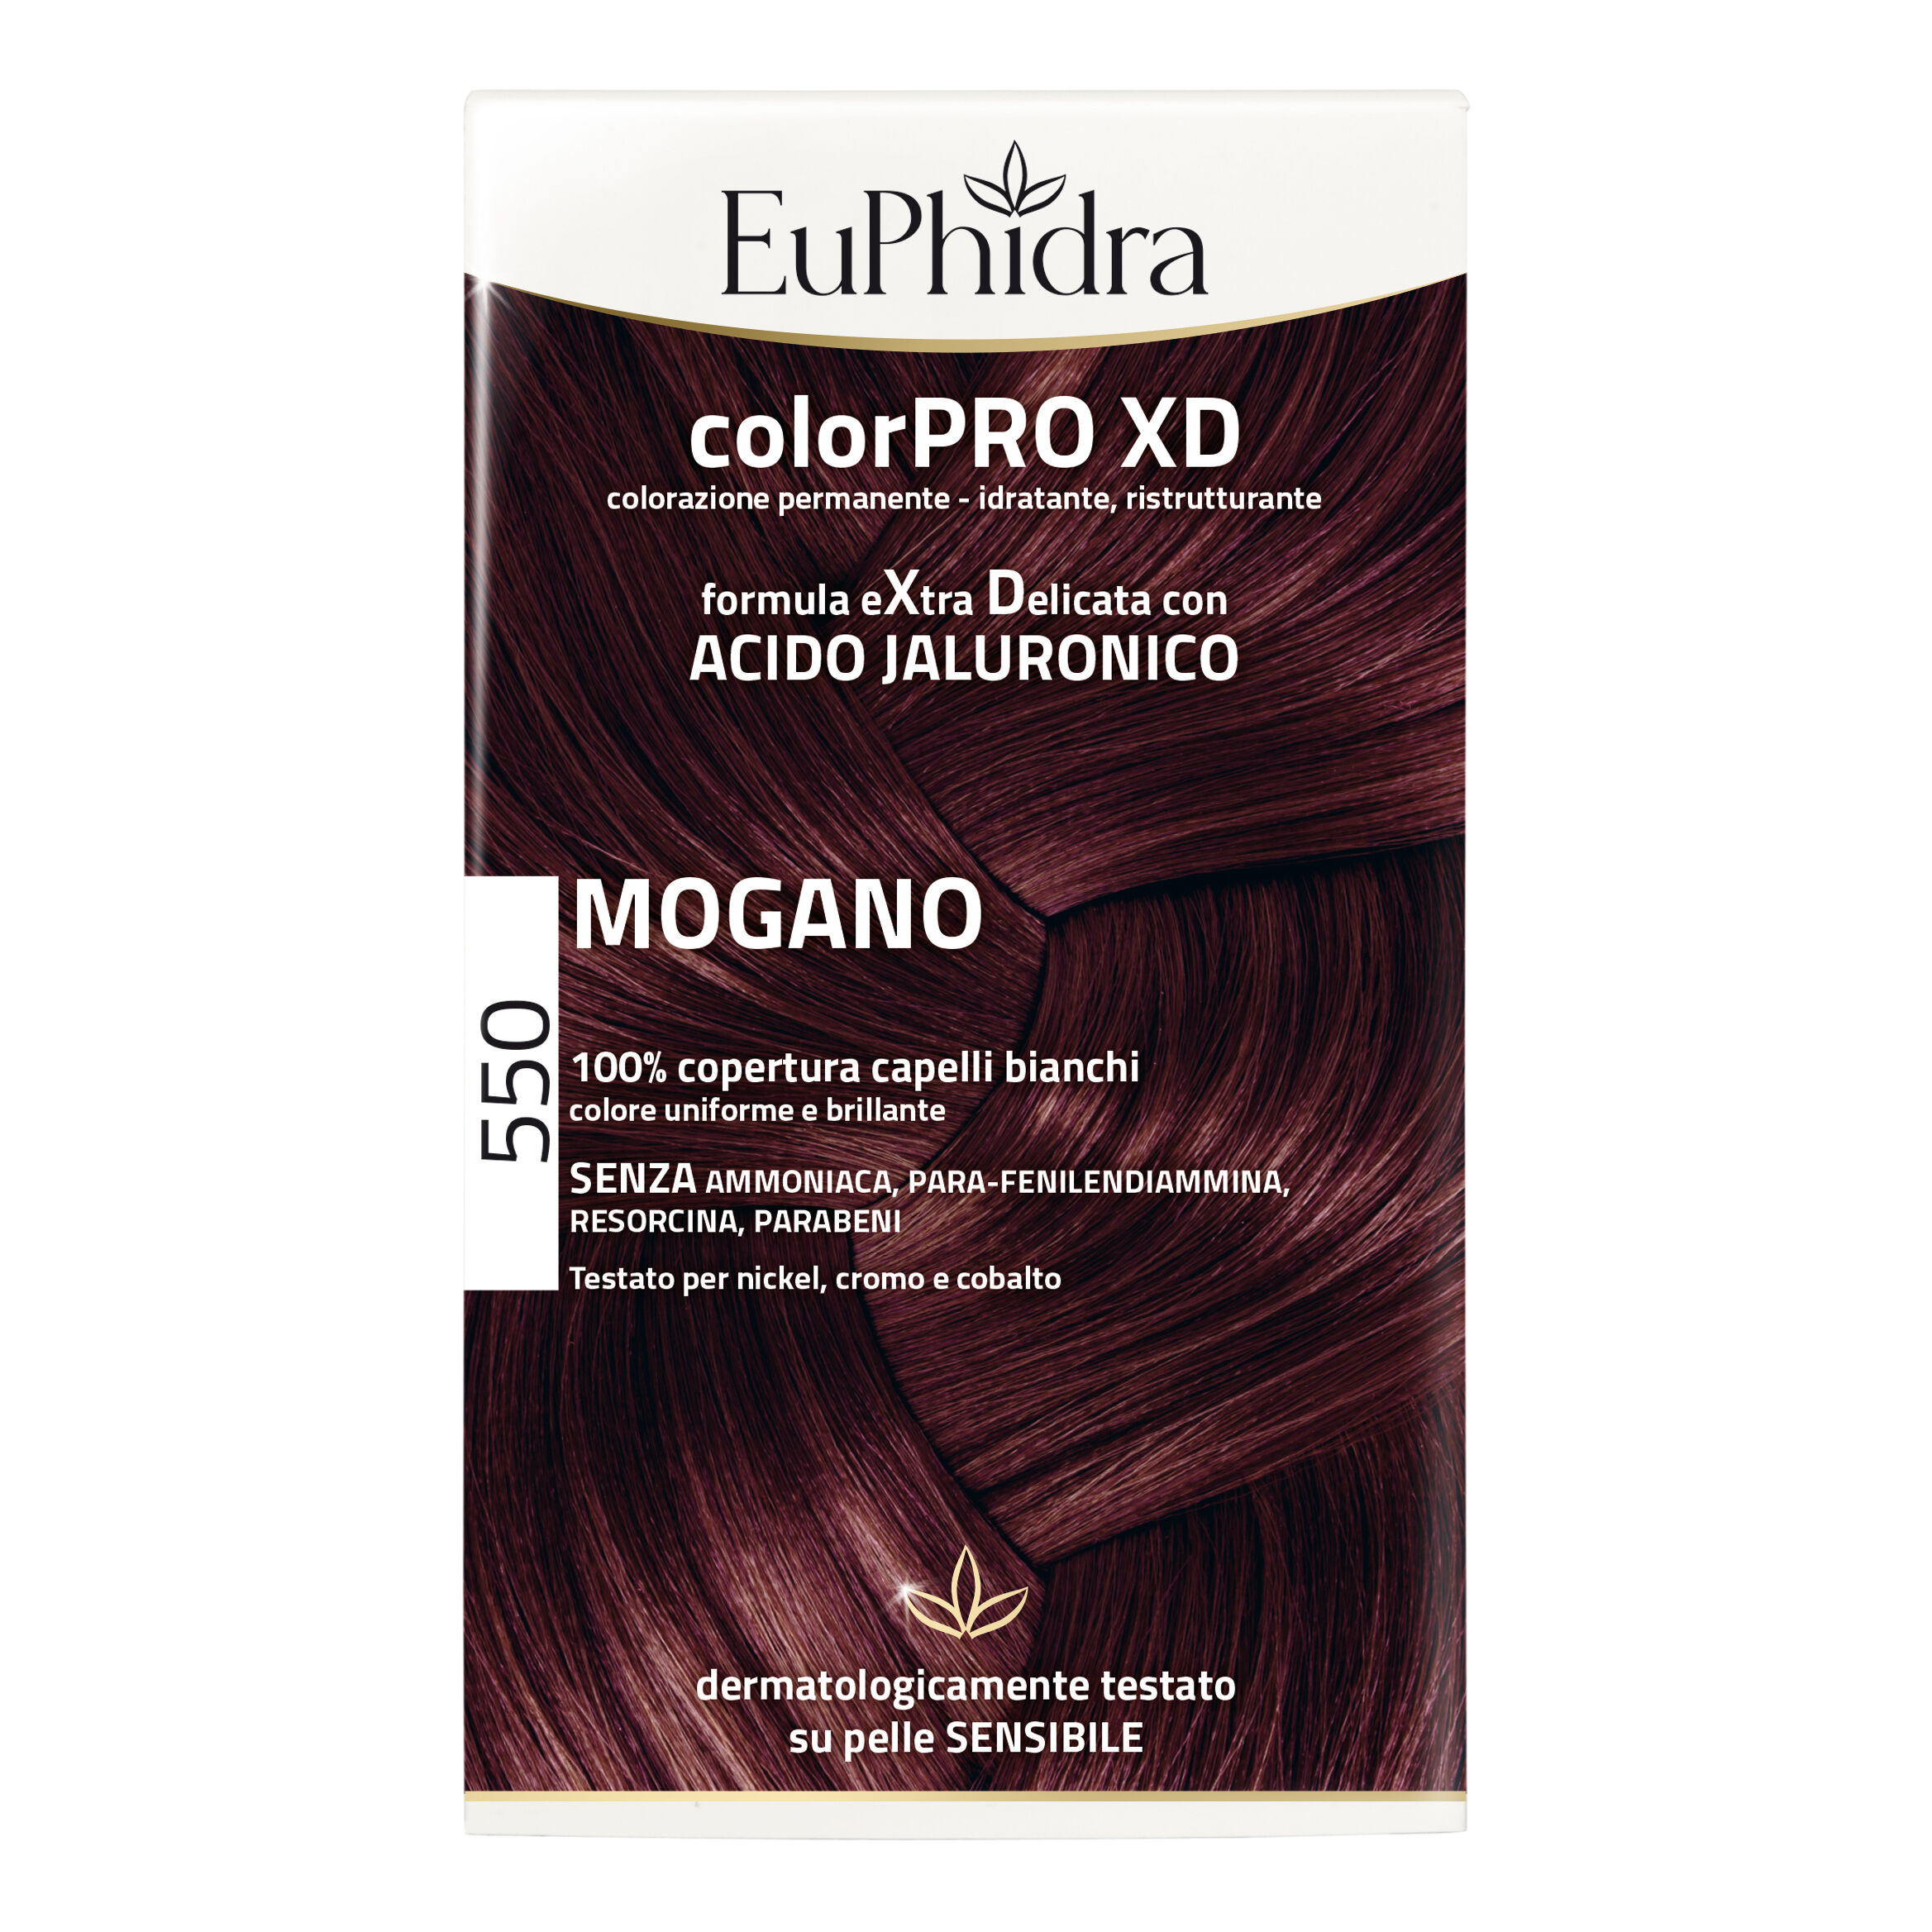 zeta farmaceutici spa euphidra color - pro xd 550 mogano